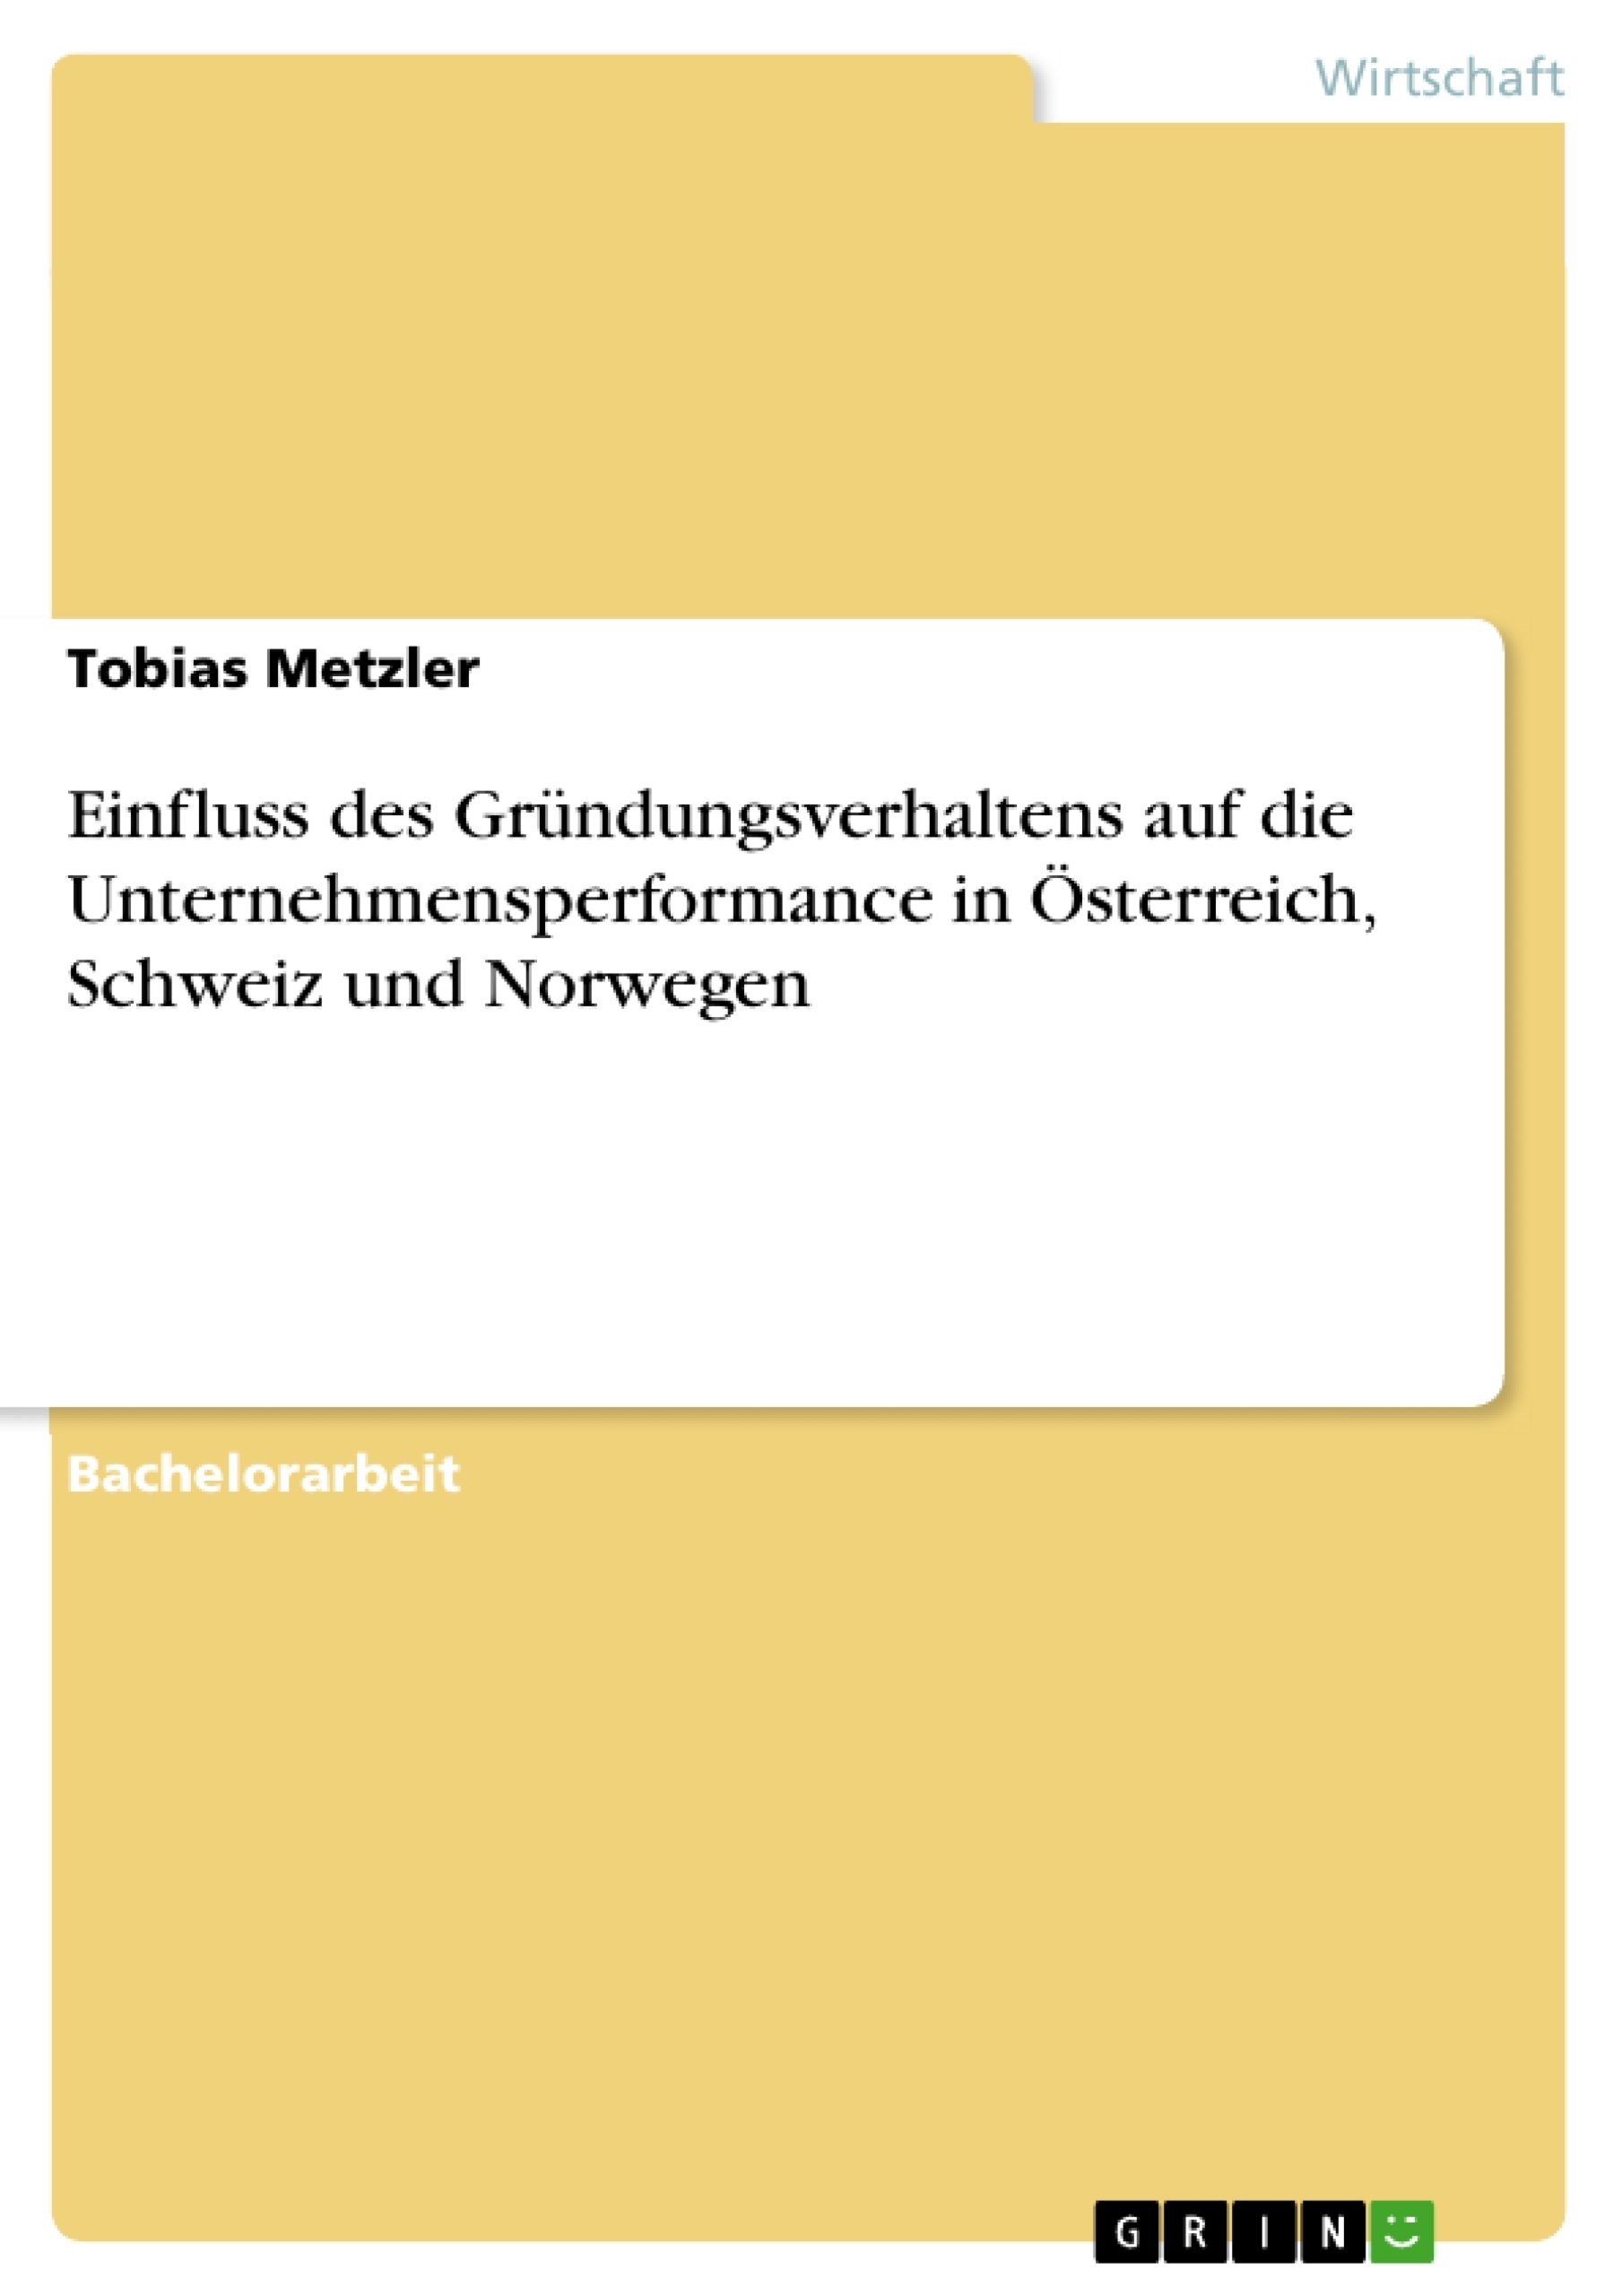 Título: Einfluss des Gründungsverhaltens auf die Unternehmensperformance in Österreich, Schweiz und Norwegen